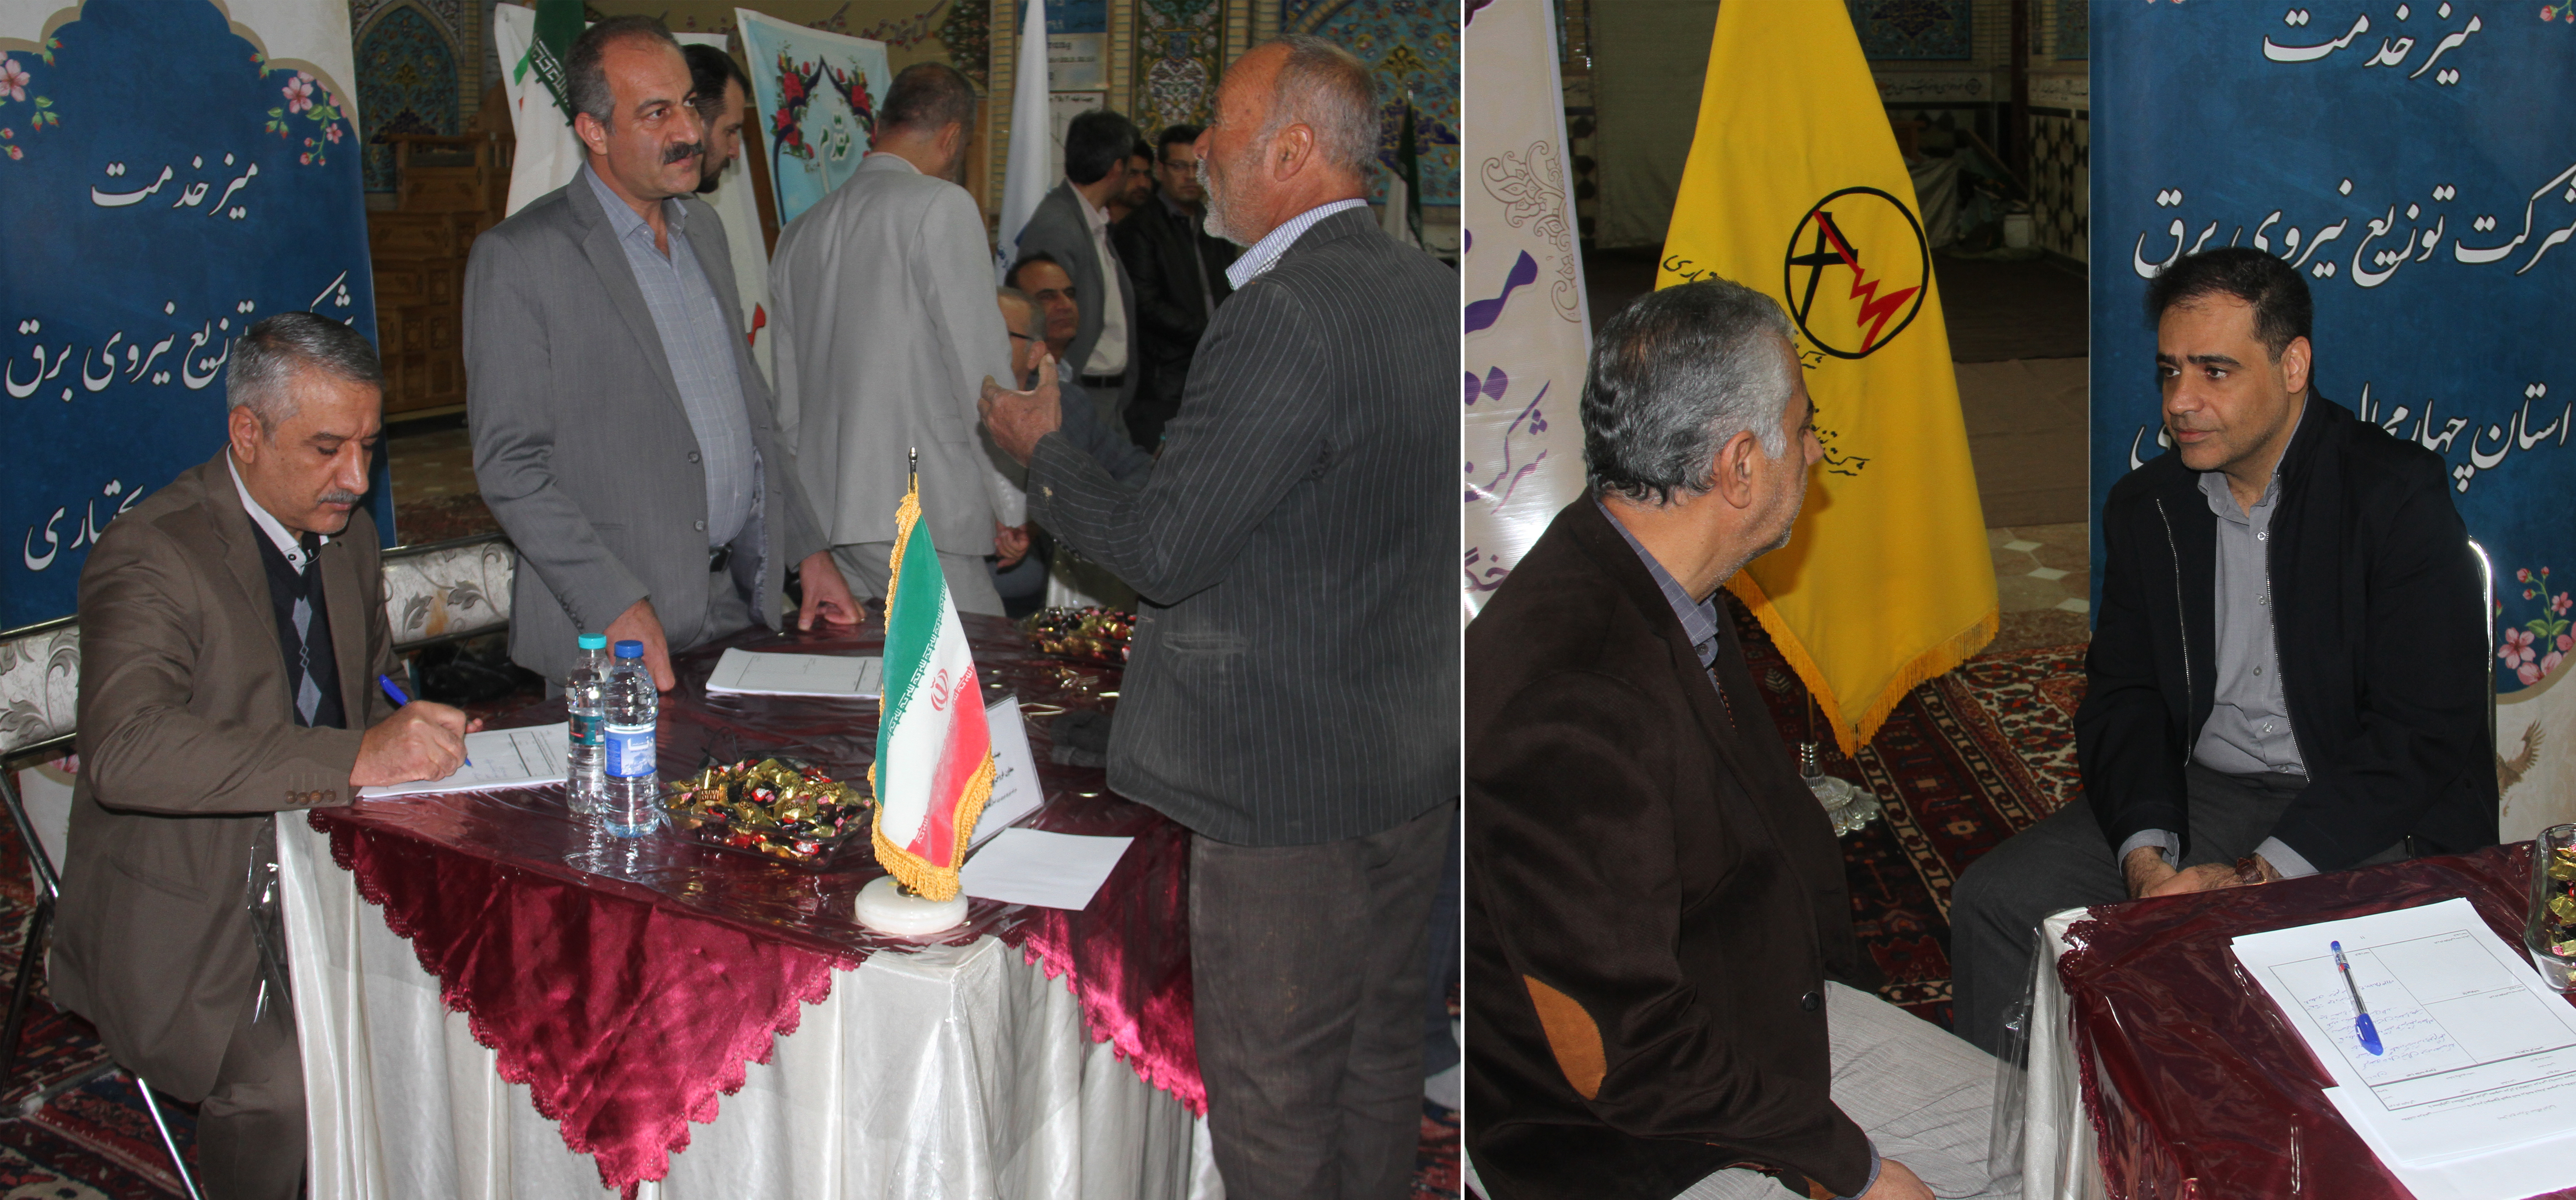  برپایی میز خدمت شرکت توزیع نیروی برق استان در محل اقامه نماز جمعه شهرکرد